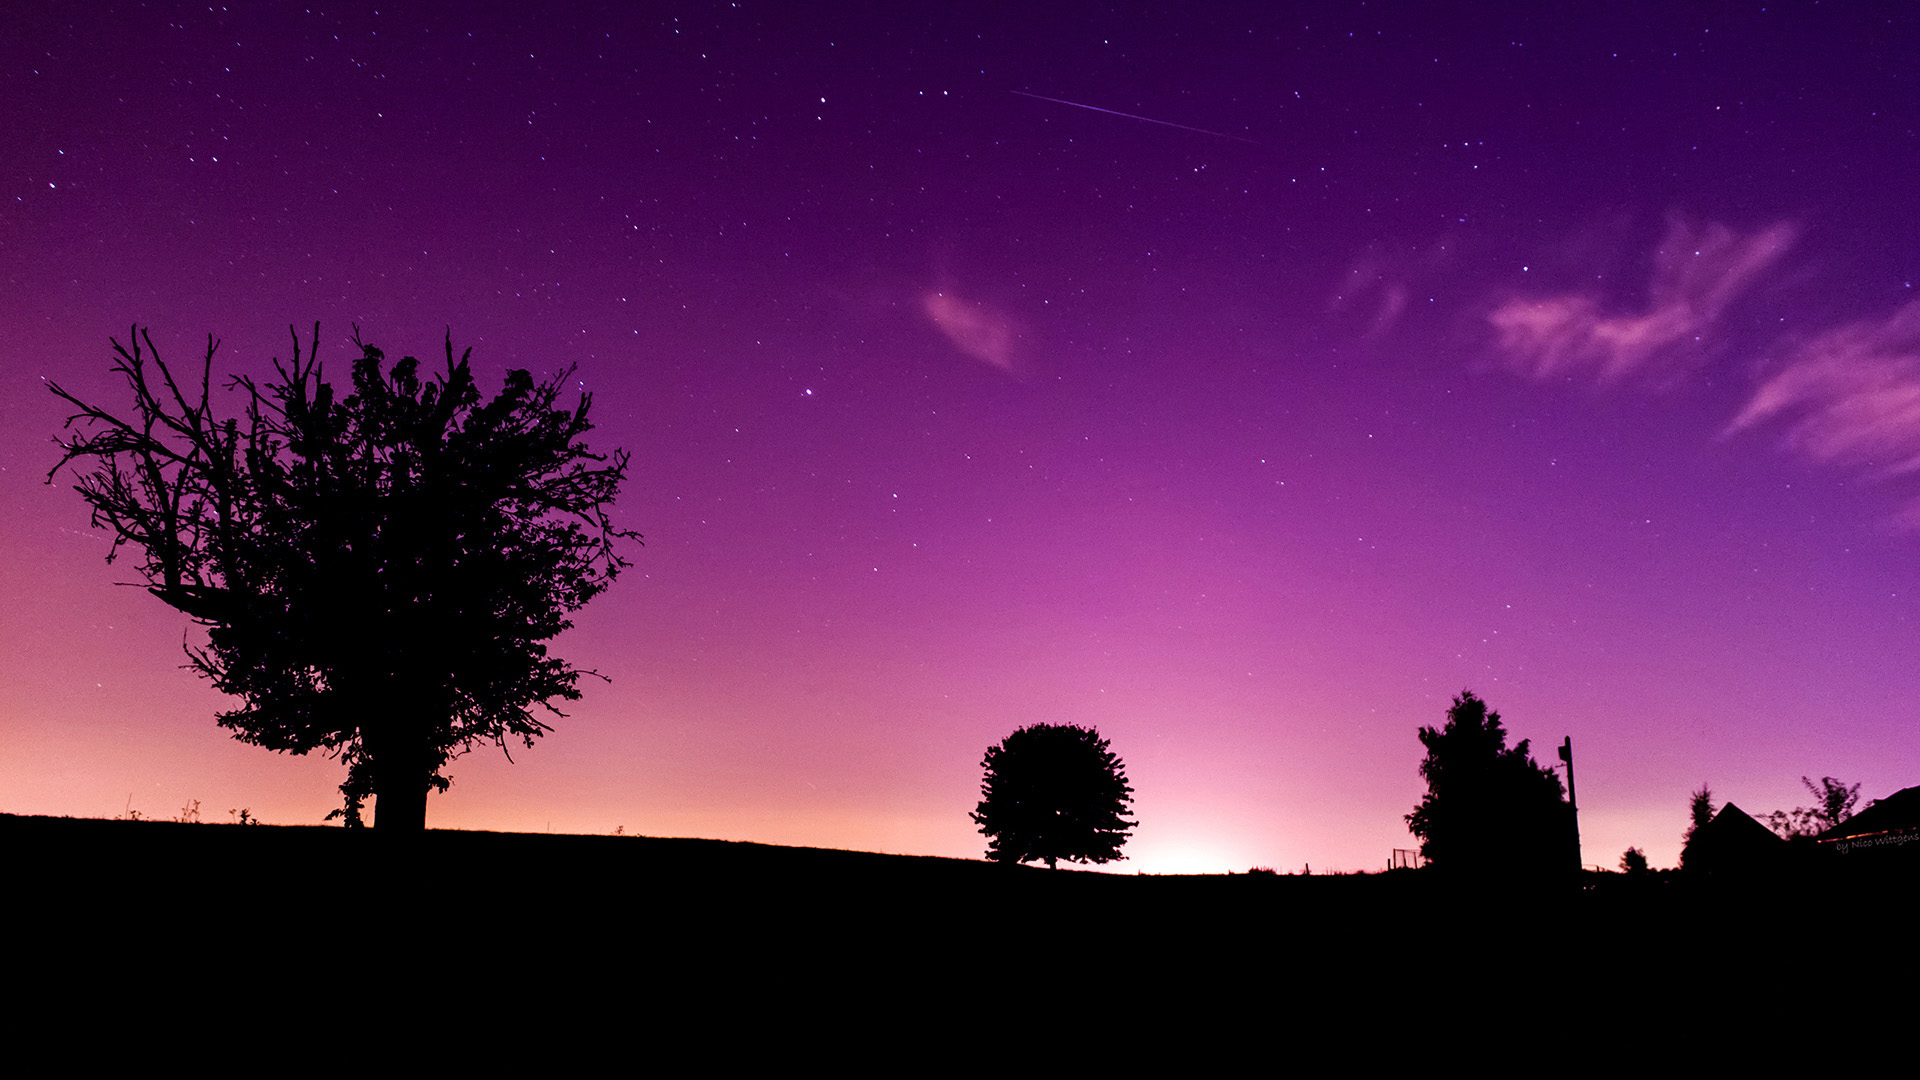 紫色意境,天空,星星,小树,房子,风景桌面壁纸